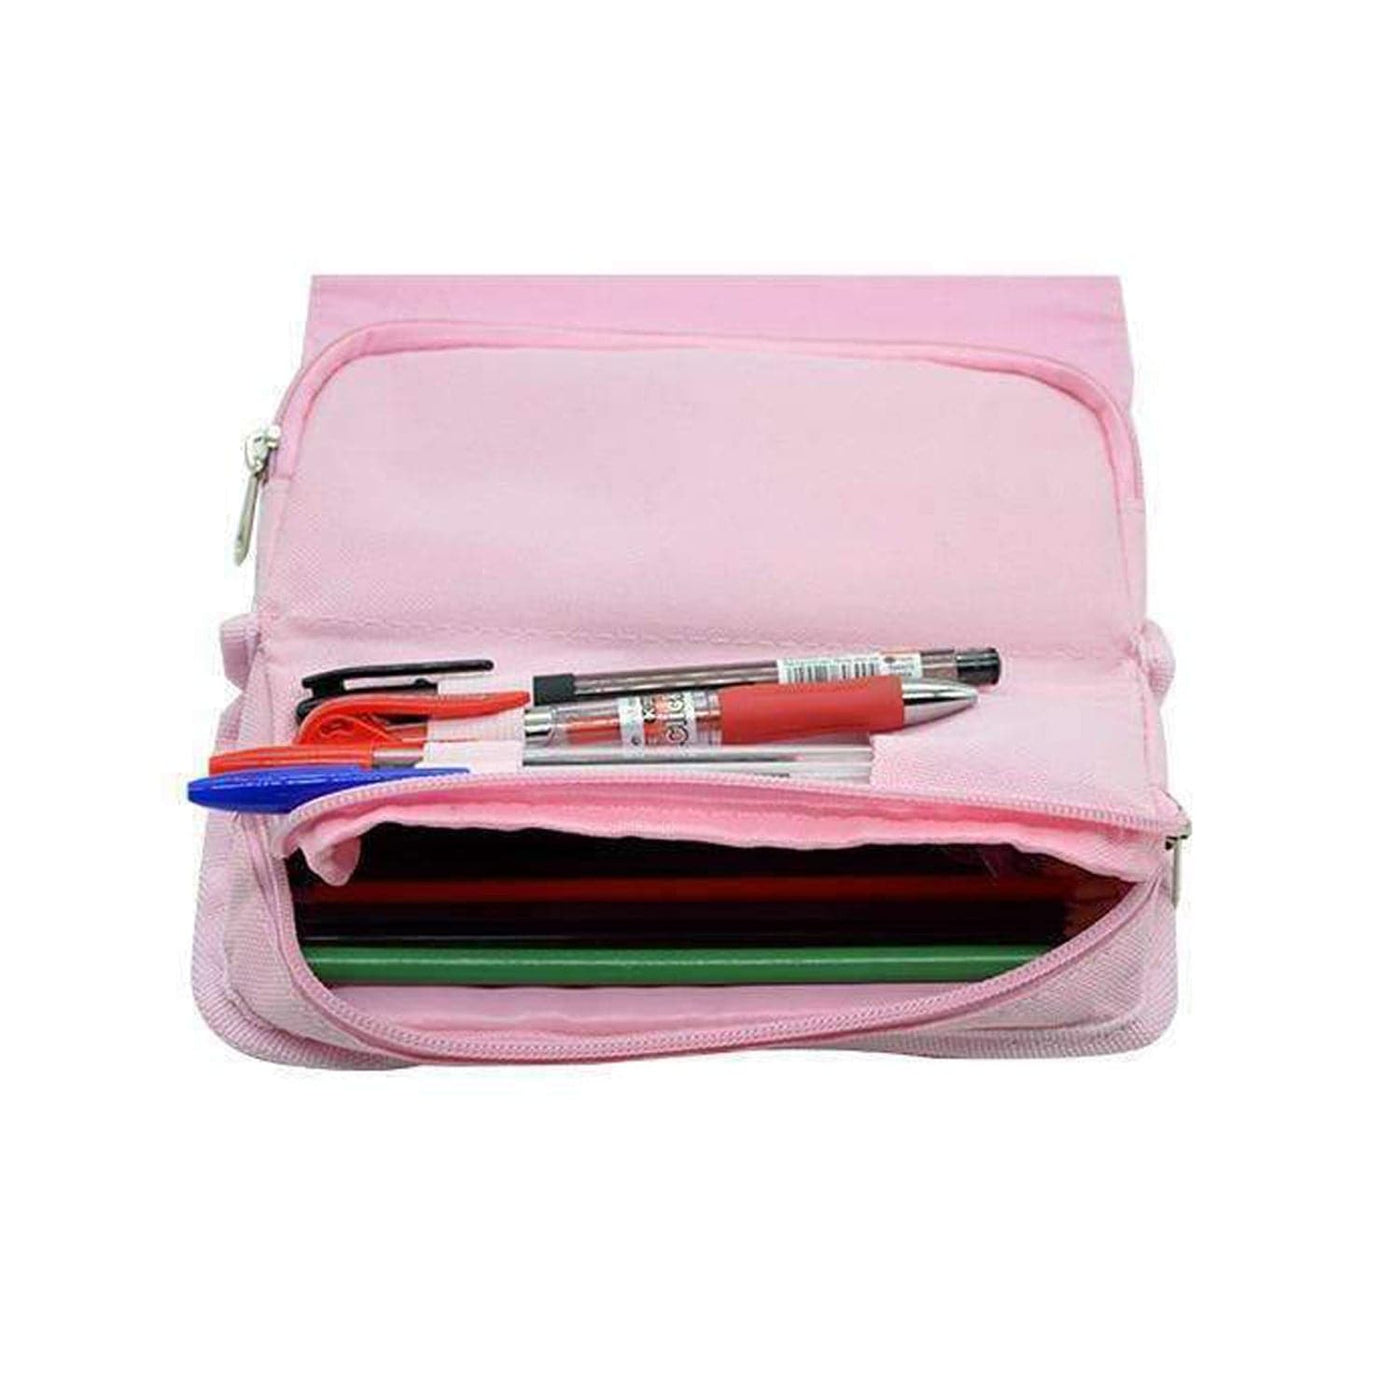 Mcdreamy - Grey's Anatomy Pencil Case